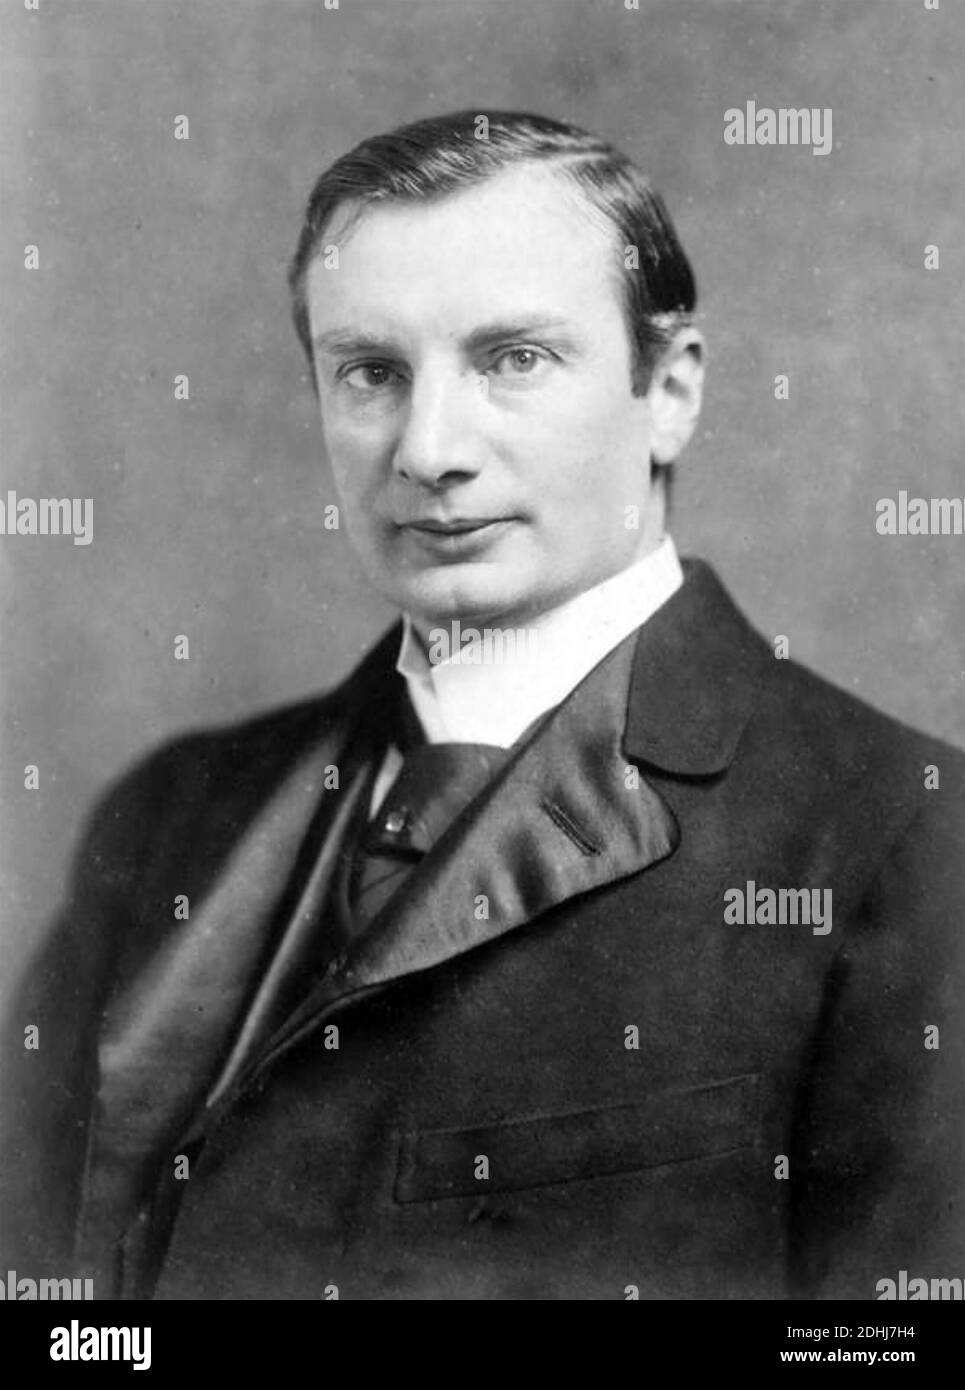 WALDEMAR HAFFKINE (1860-1930) bactériologue franco-russe et microbiologiste qui a découvert un vaccin anti-choléra. Banque D'Images